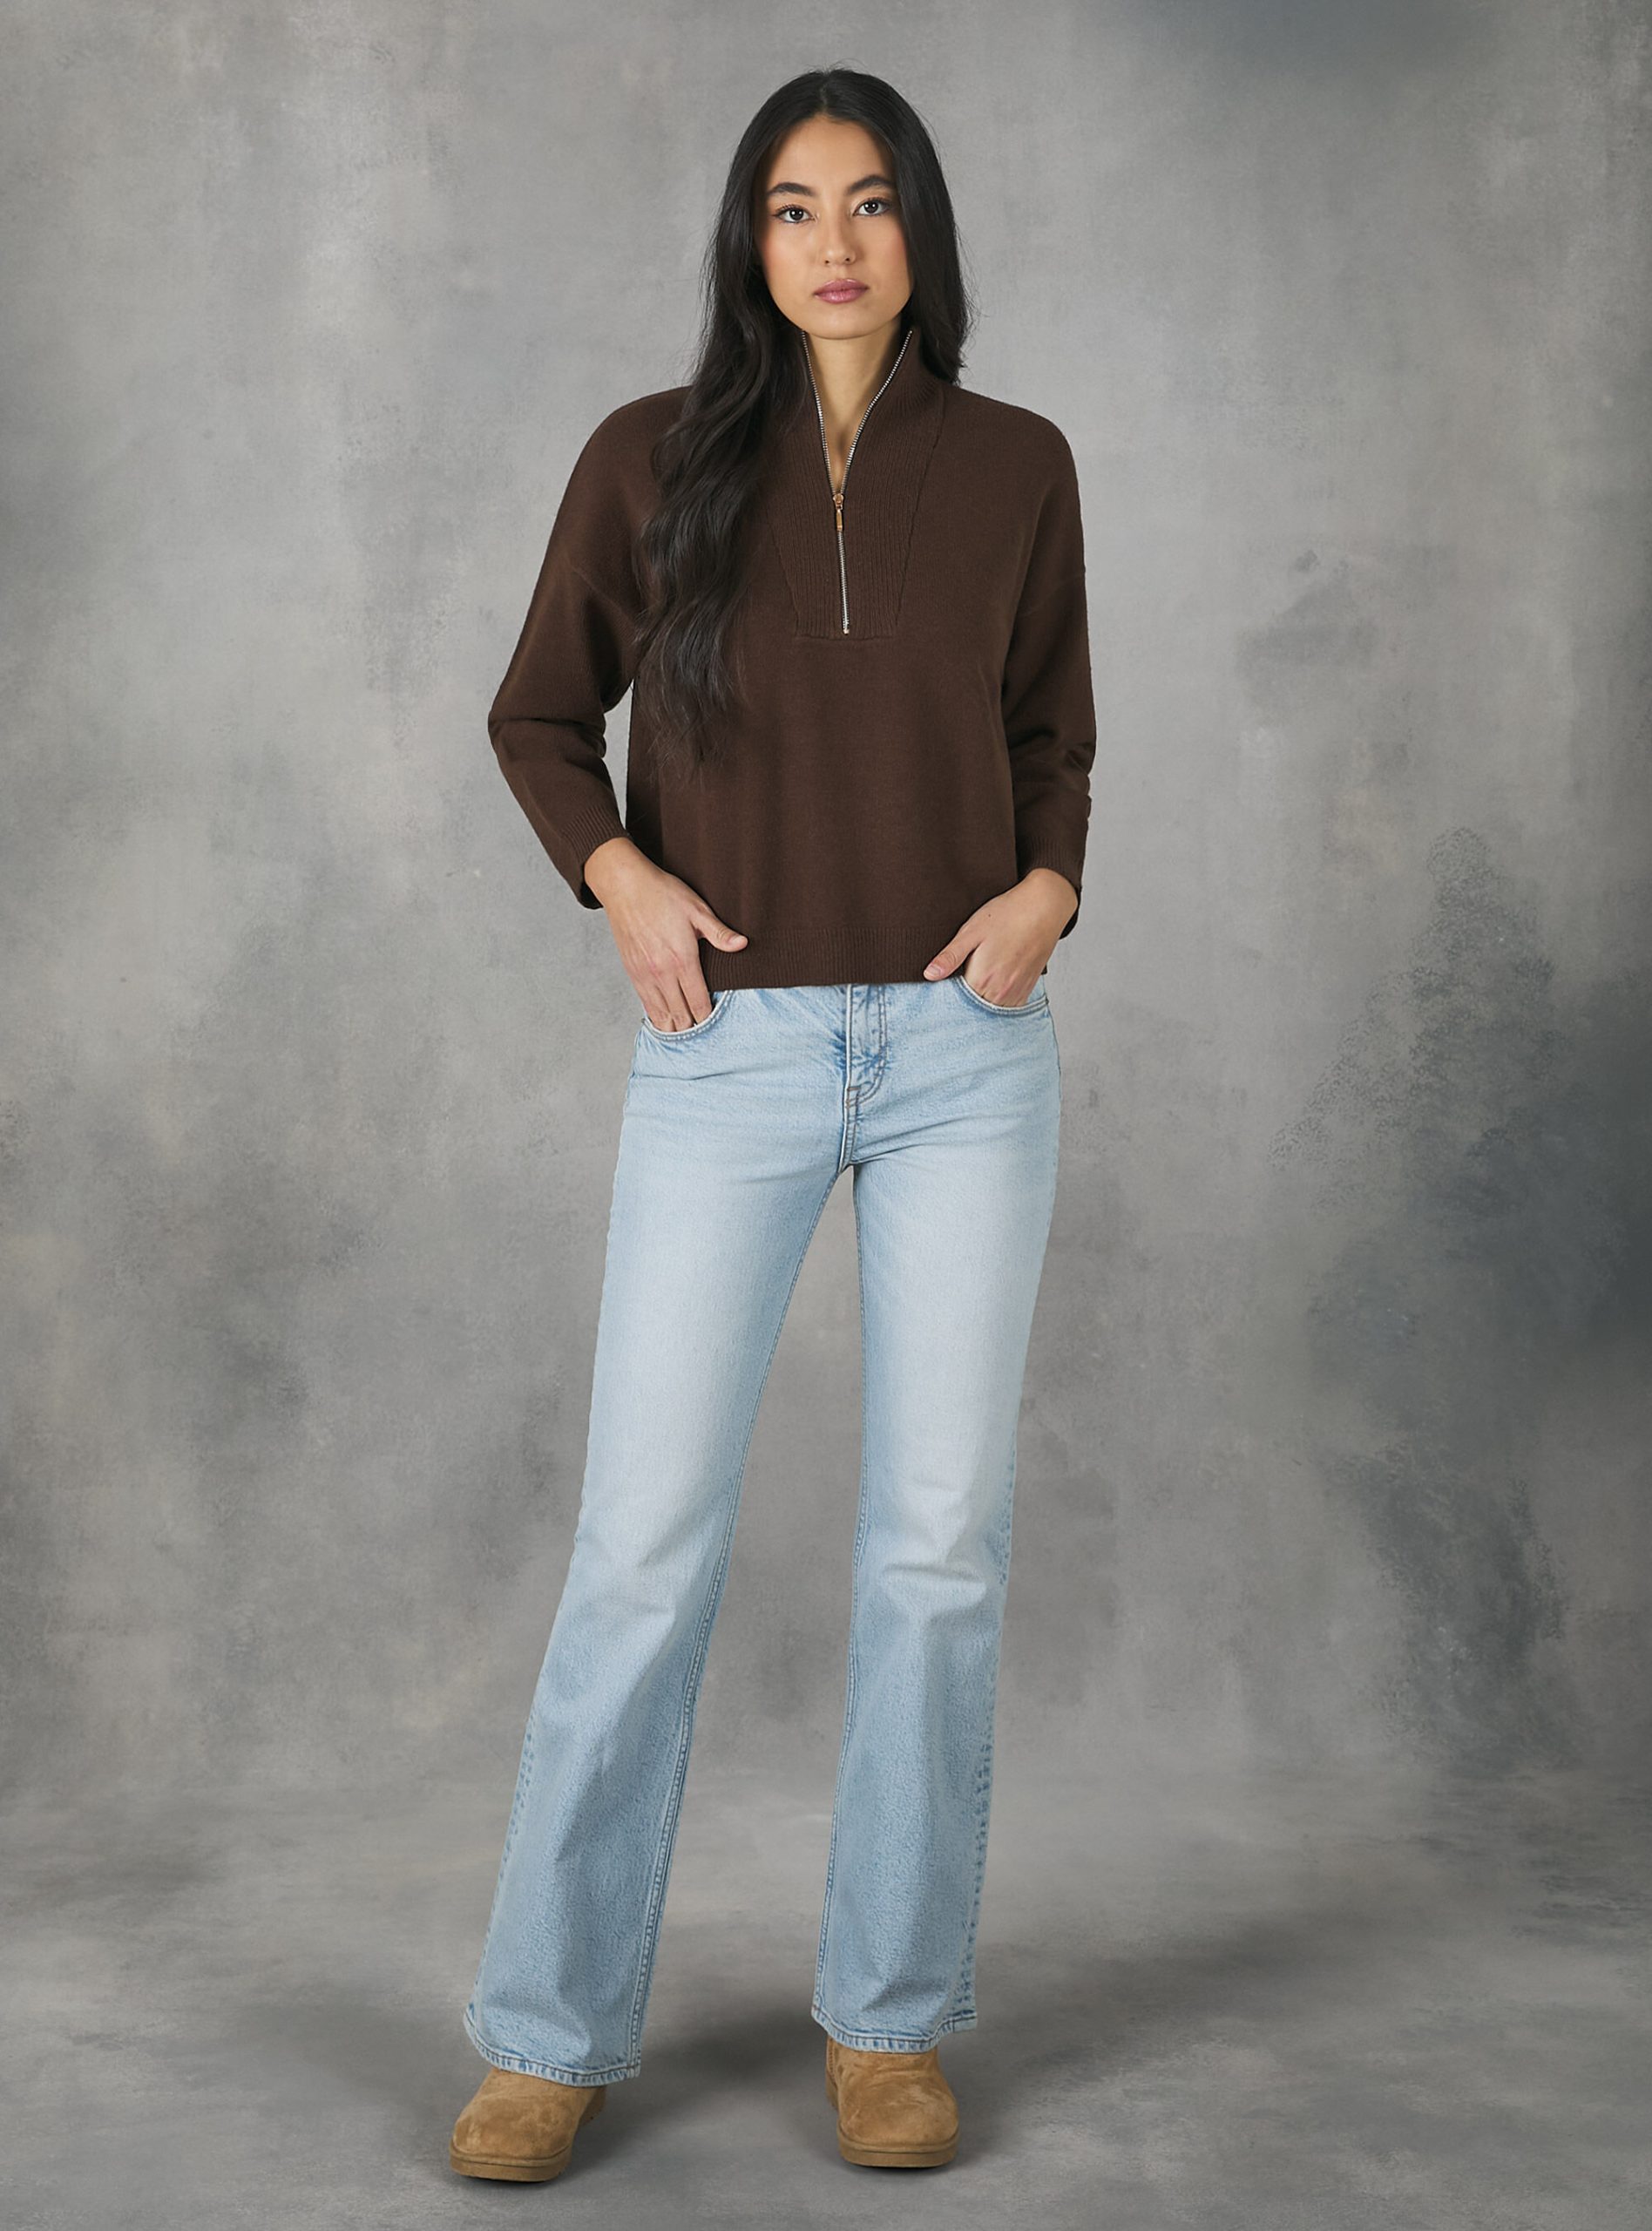 Half-Neck Pullover With Zip Frauen Bestellung Br2 Brown Medium Strickwaren Alcott – 1